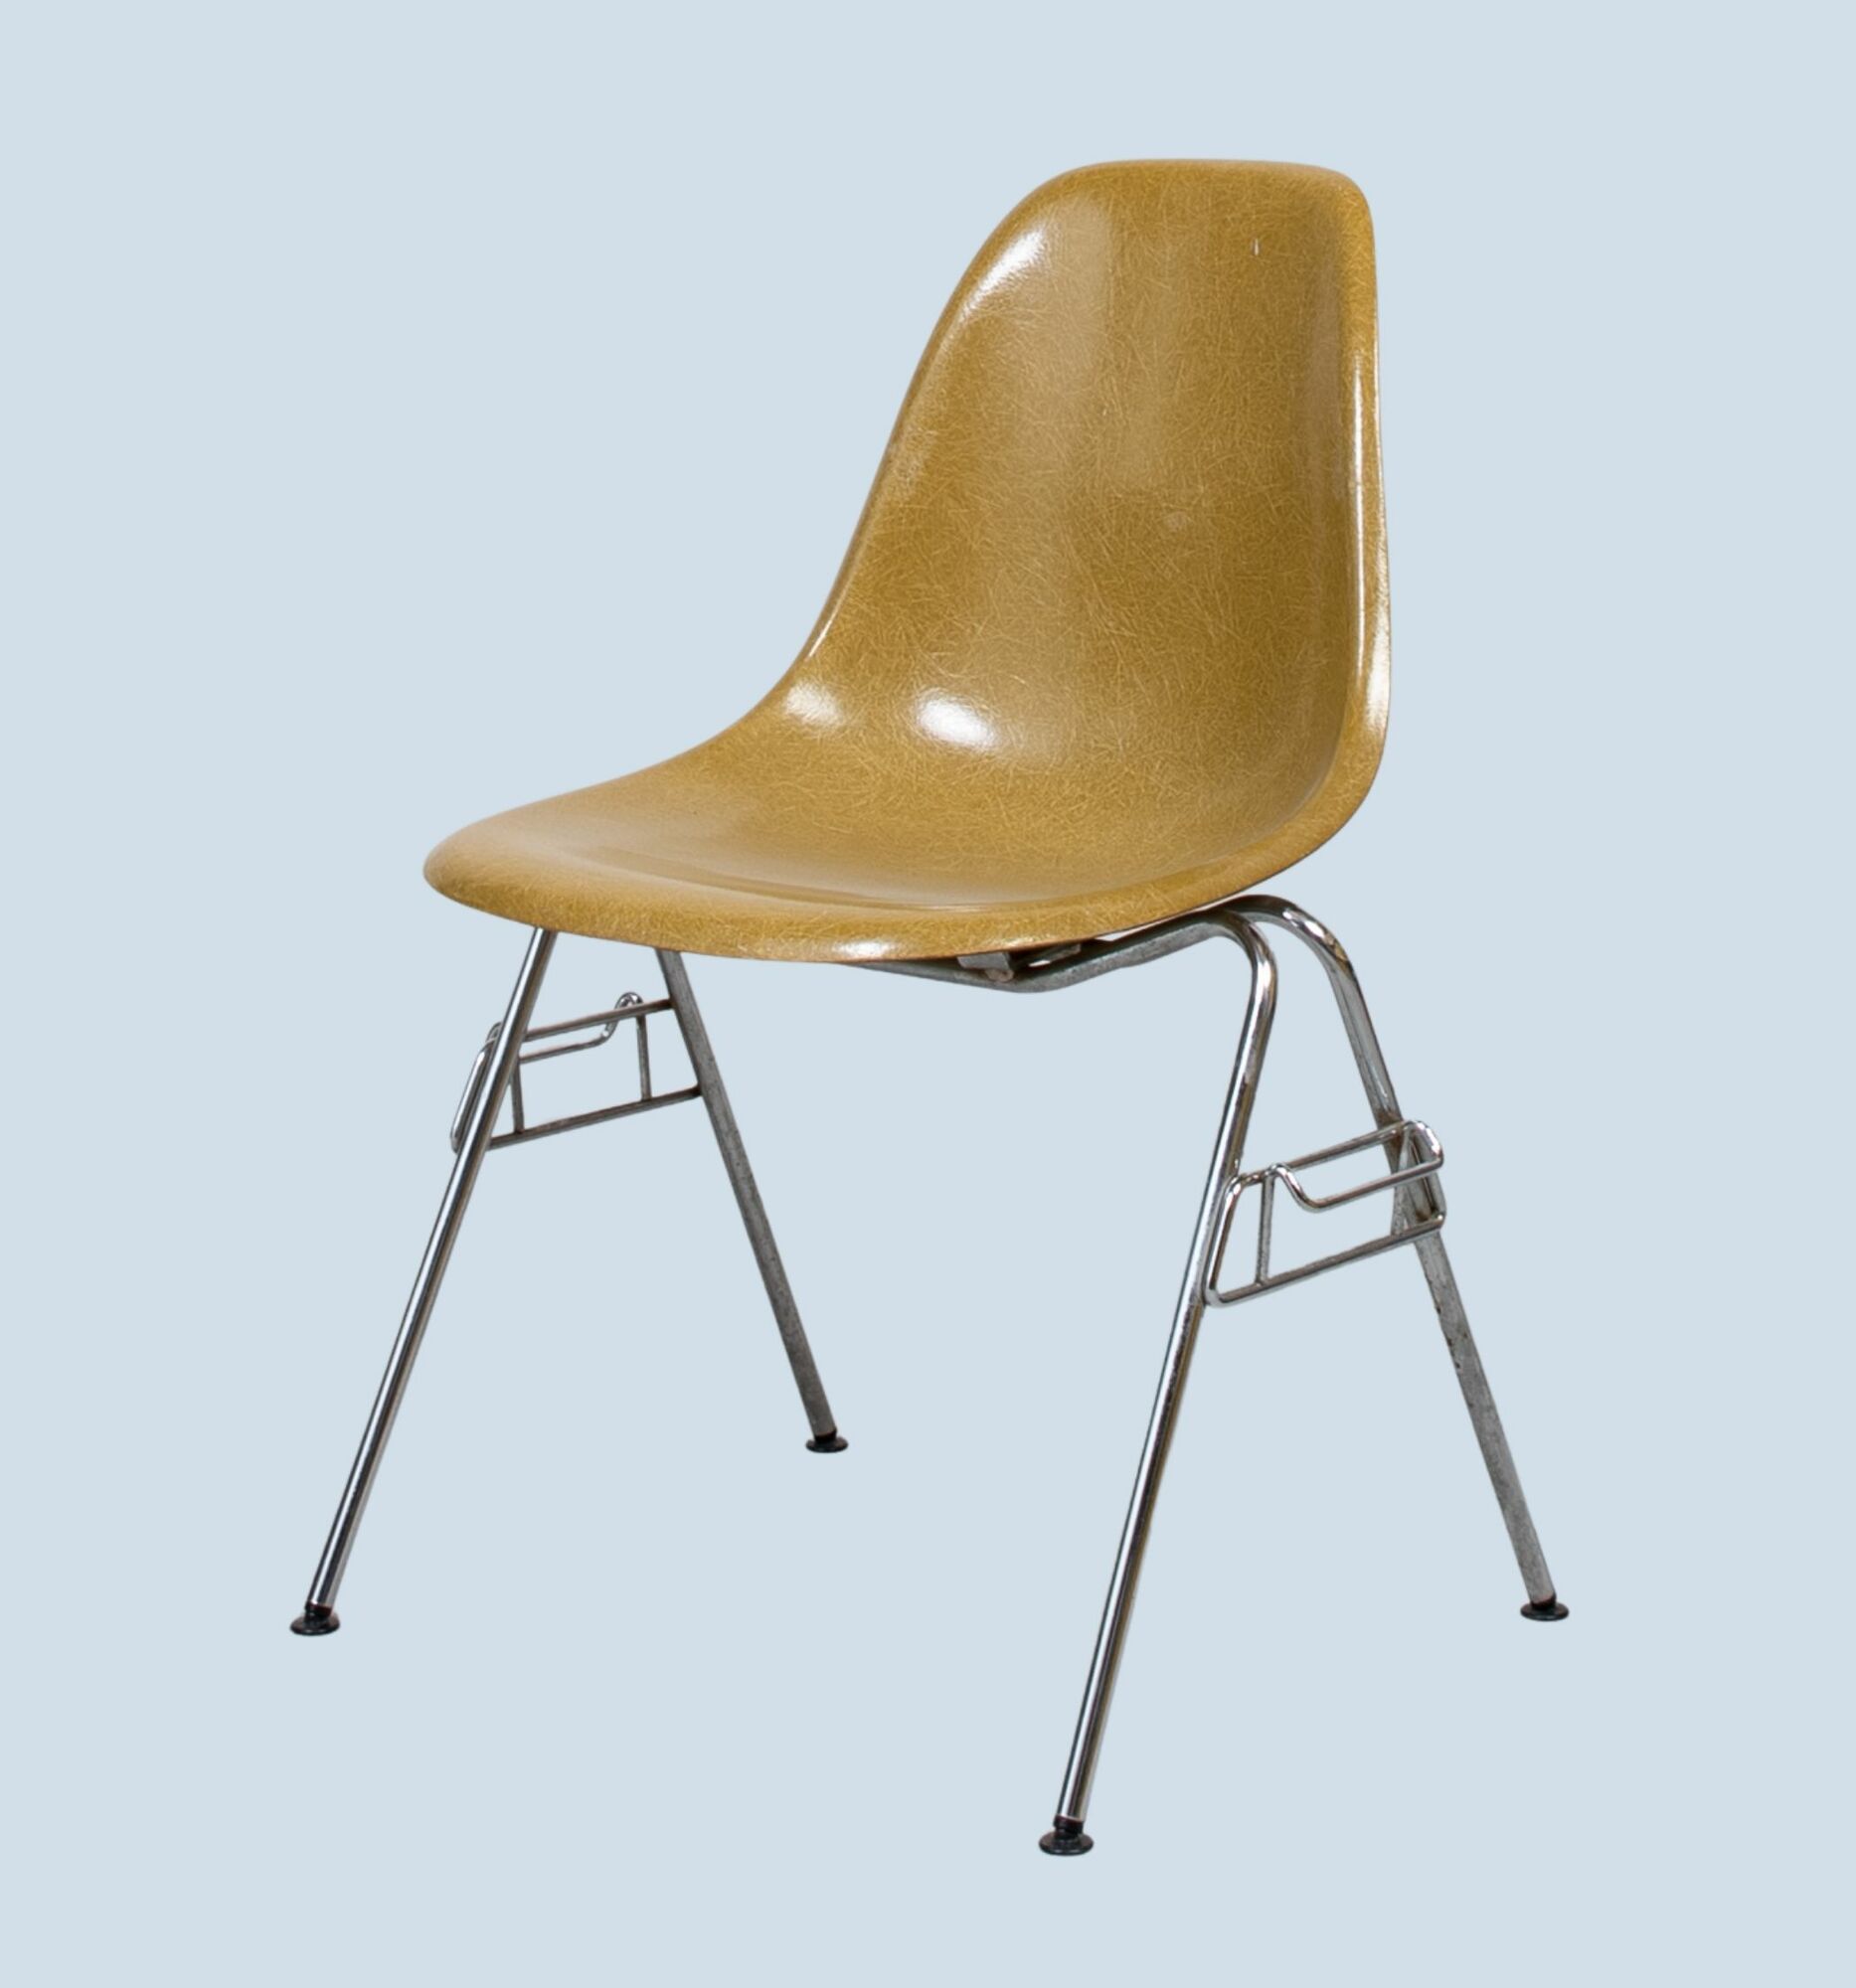 Eames Fiberglass Side Chair by Herman Miller Khaki 0